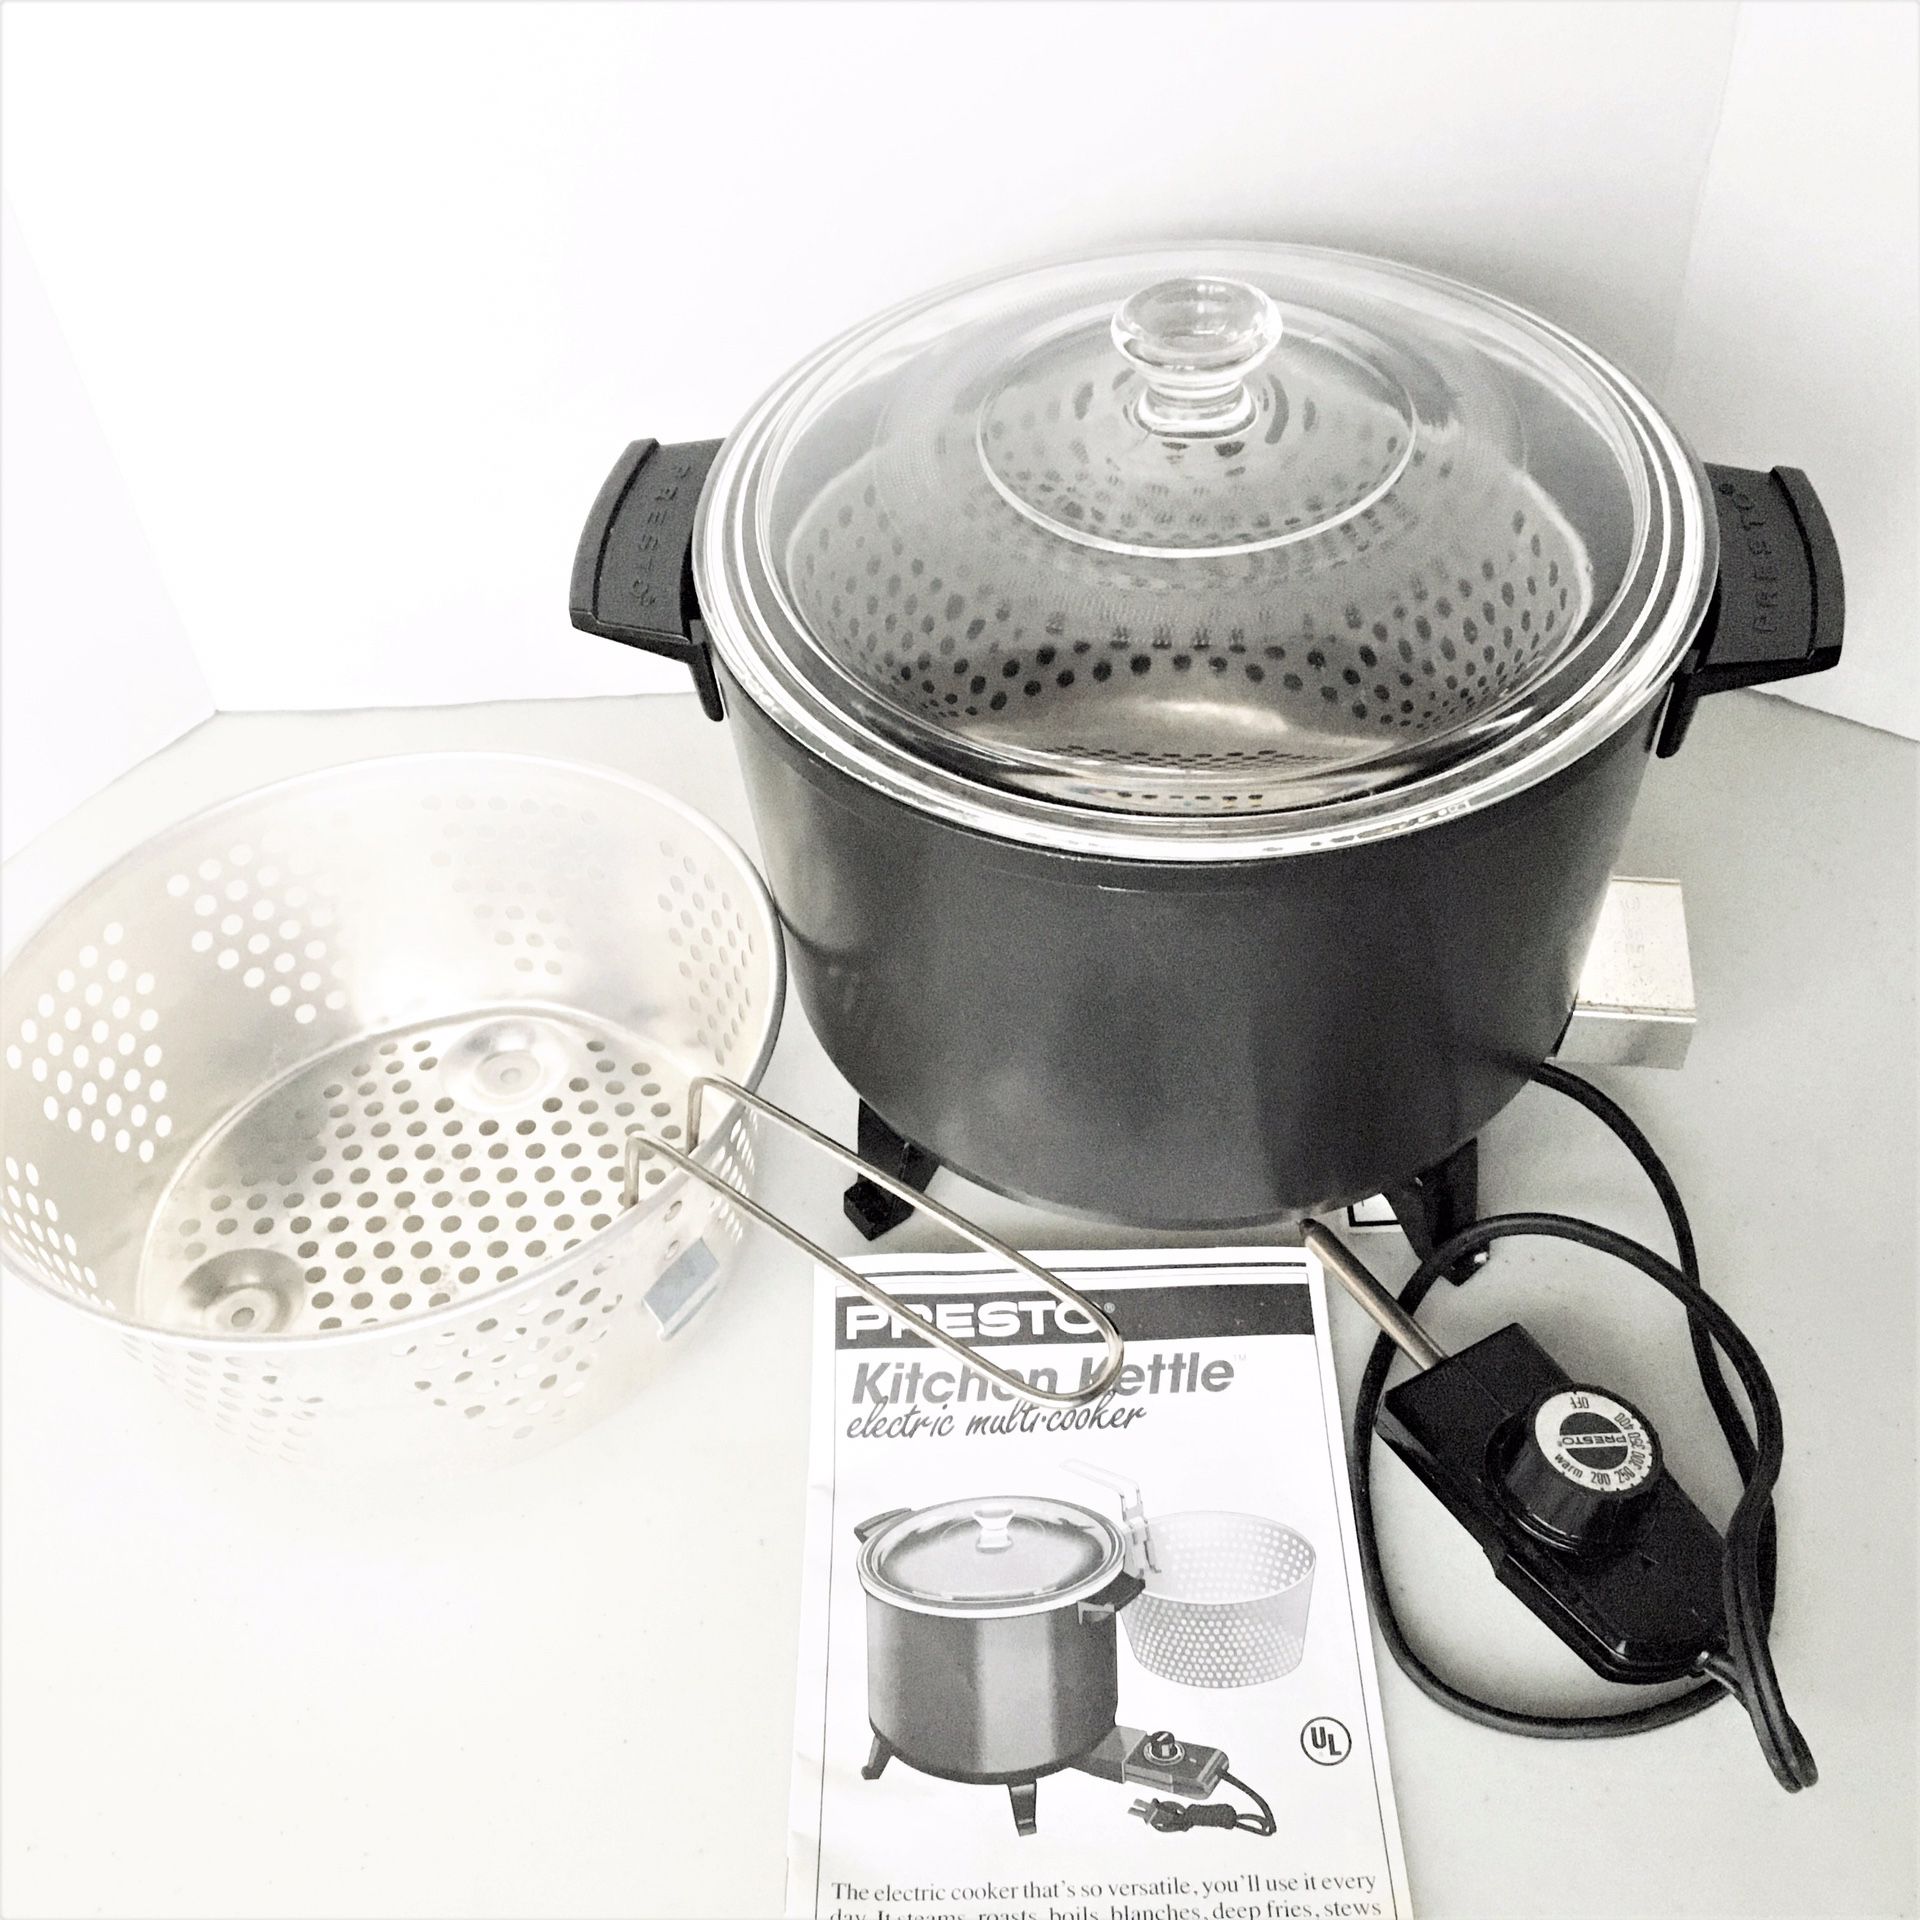 Presto Kitchen Kettle Electric Multi-cooker / Steamer / Deep Fryer / Model 06000